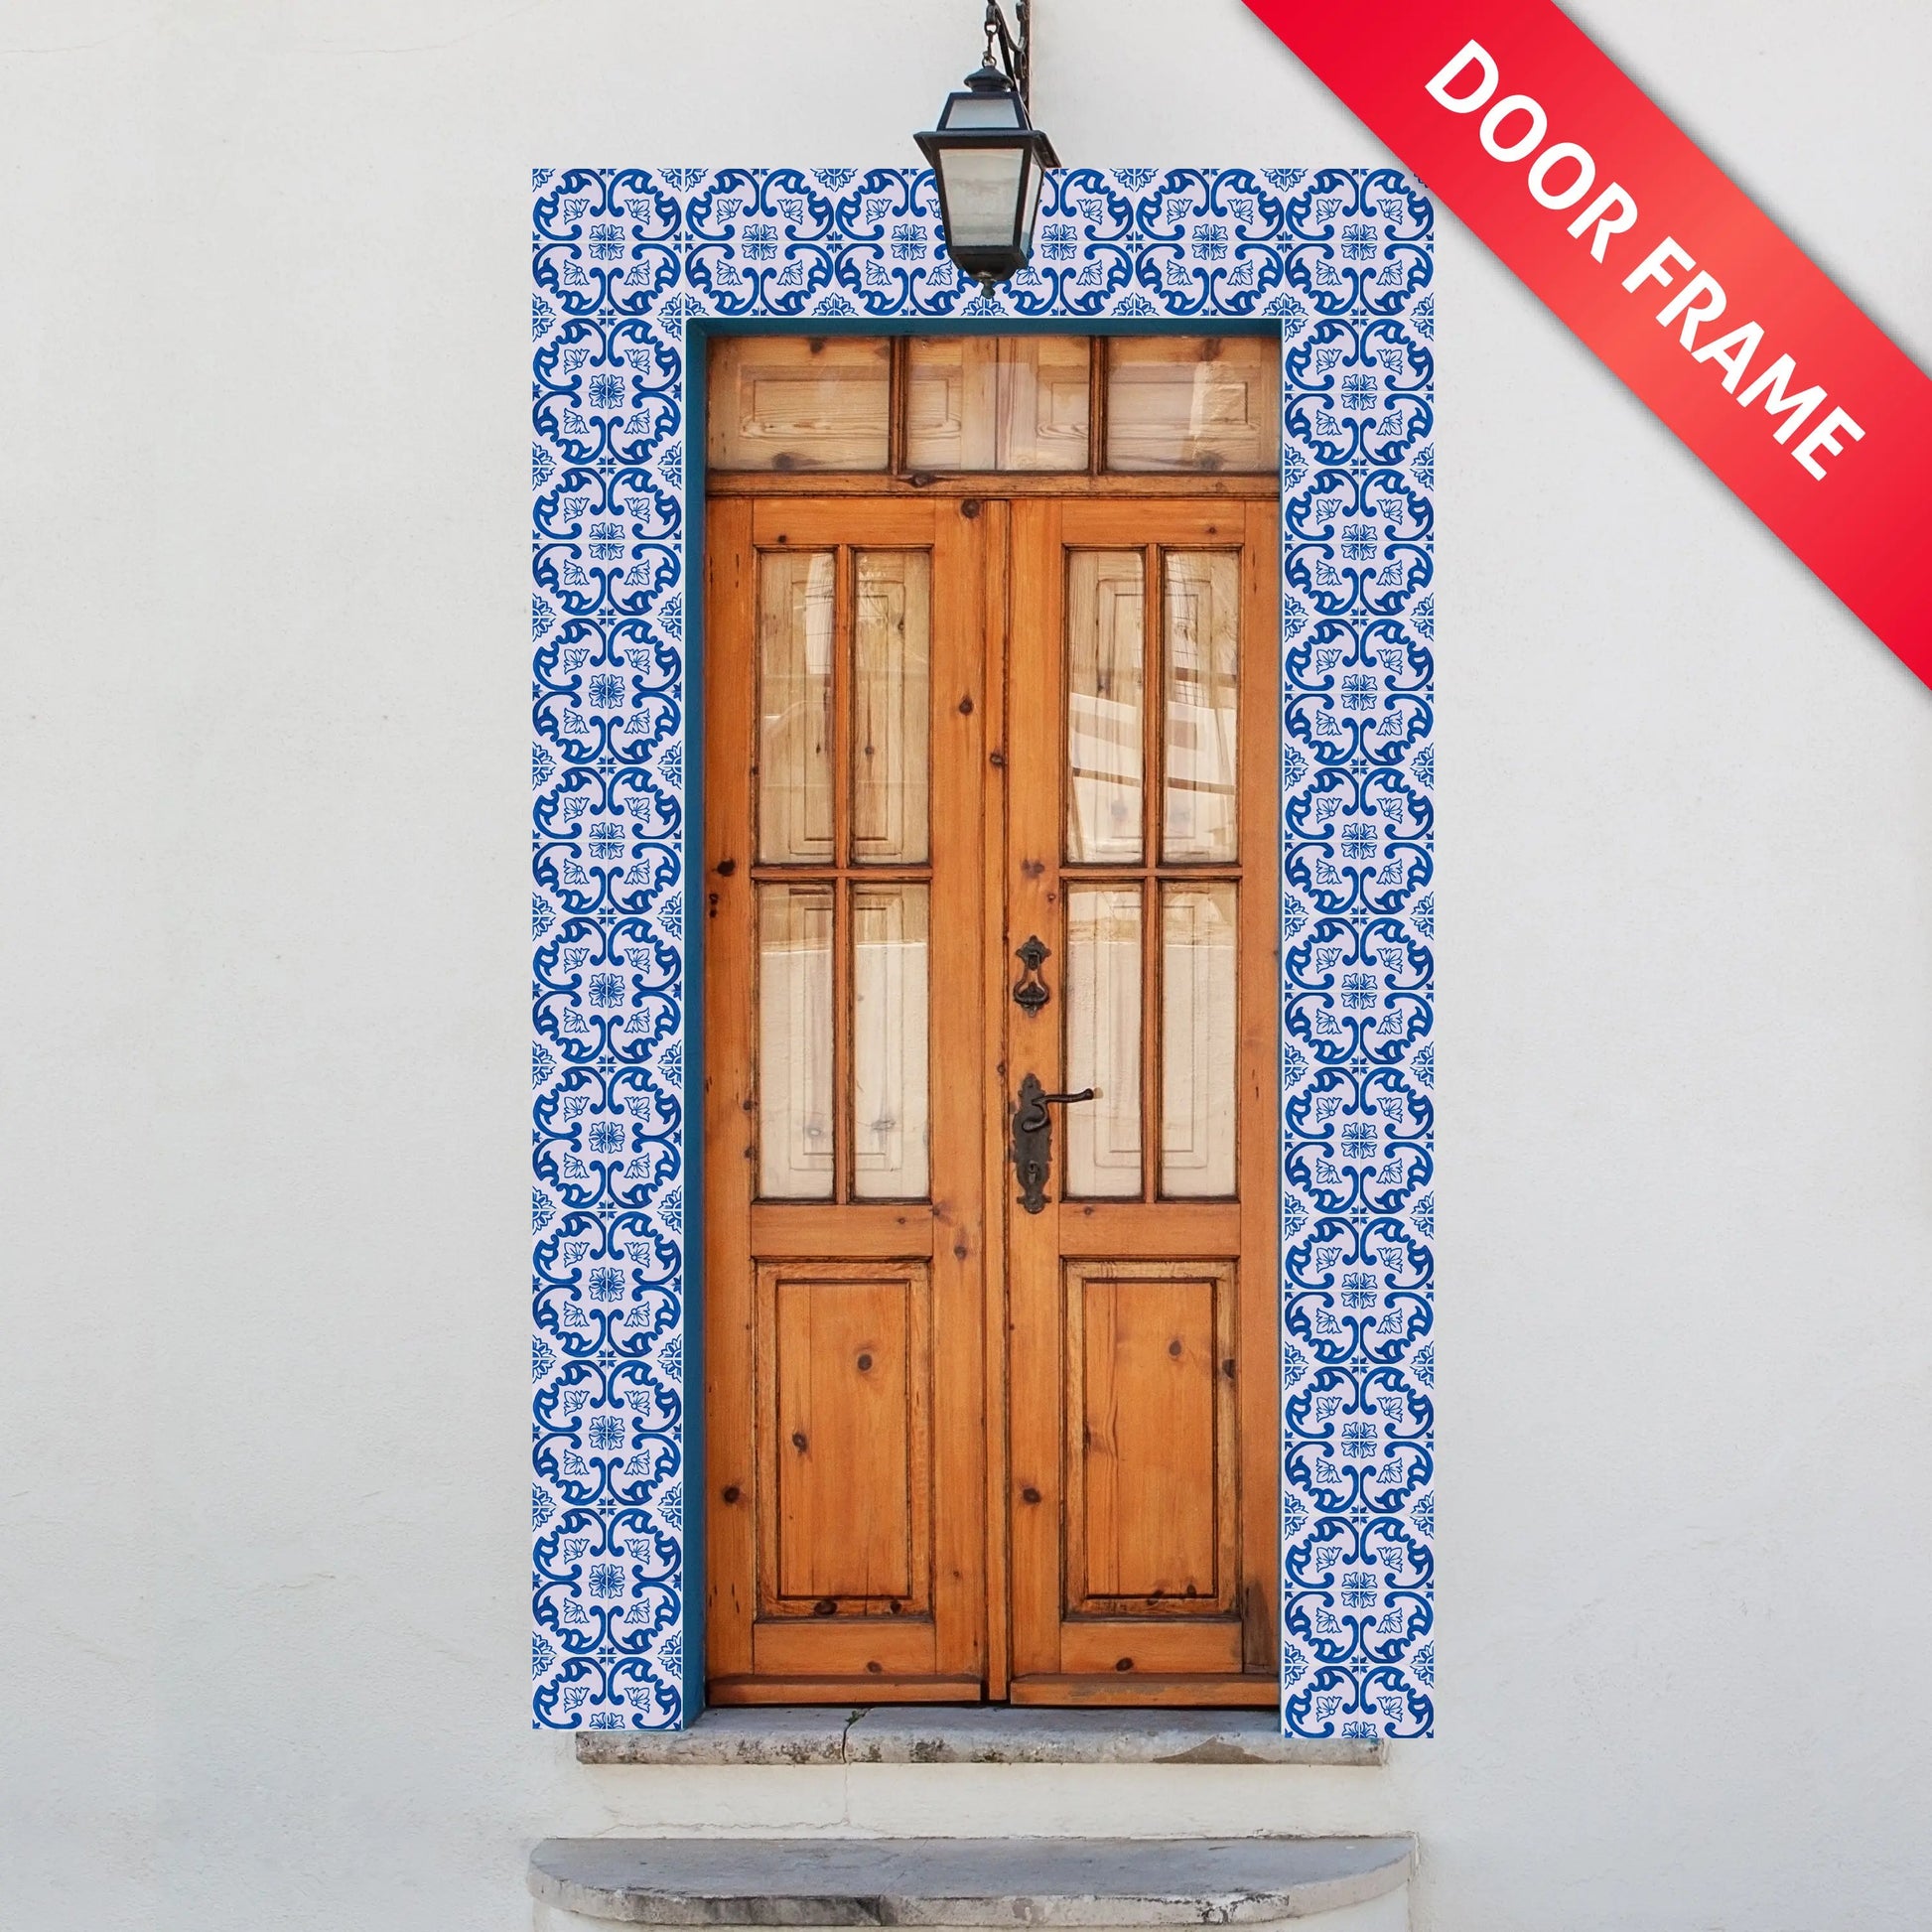 Portuguese Inspired Azulejos Navigator Ceramic Tile Door Frame-Rooster Camisa 